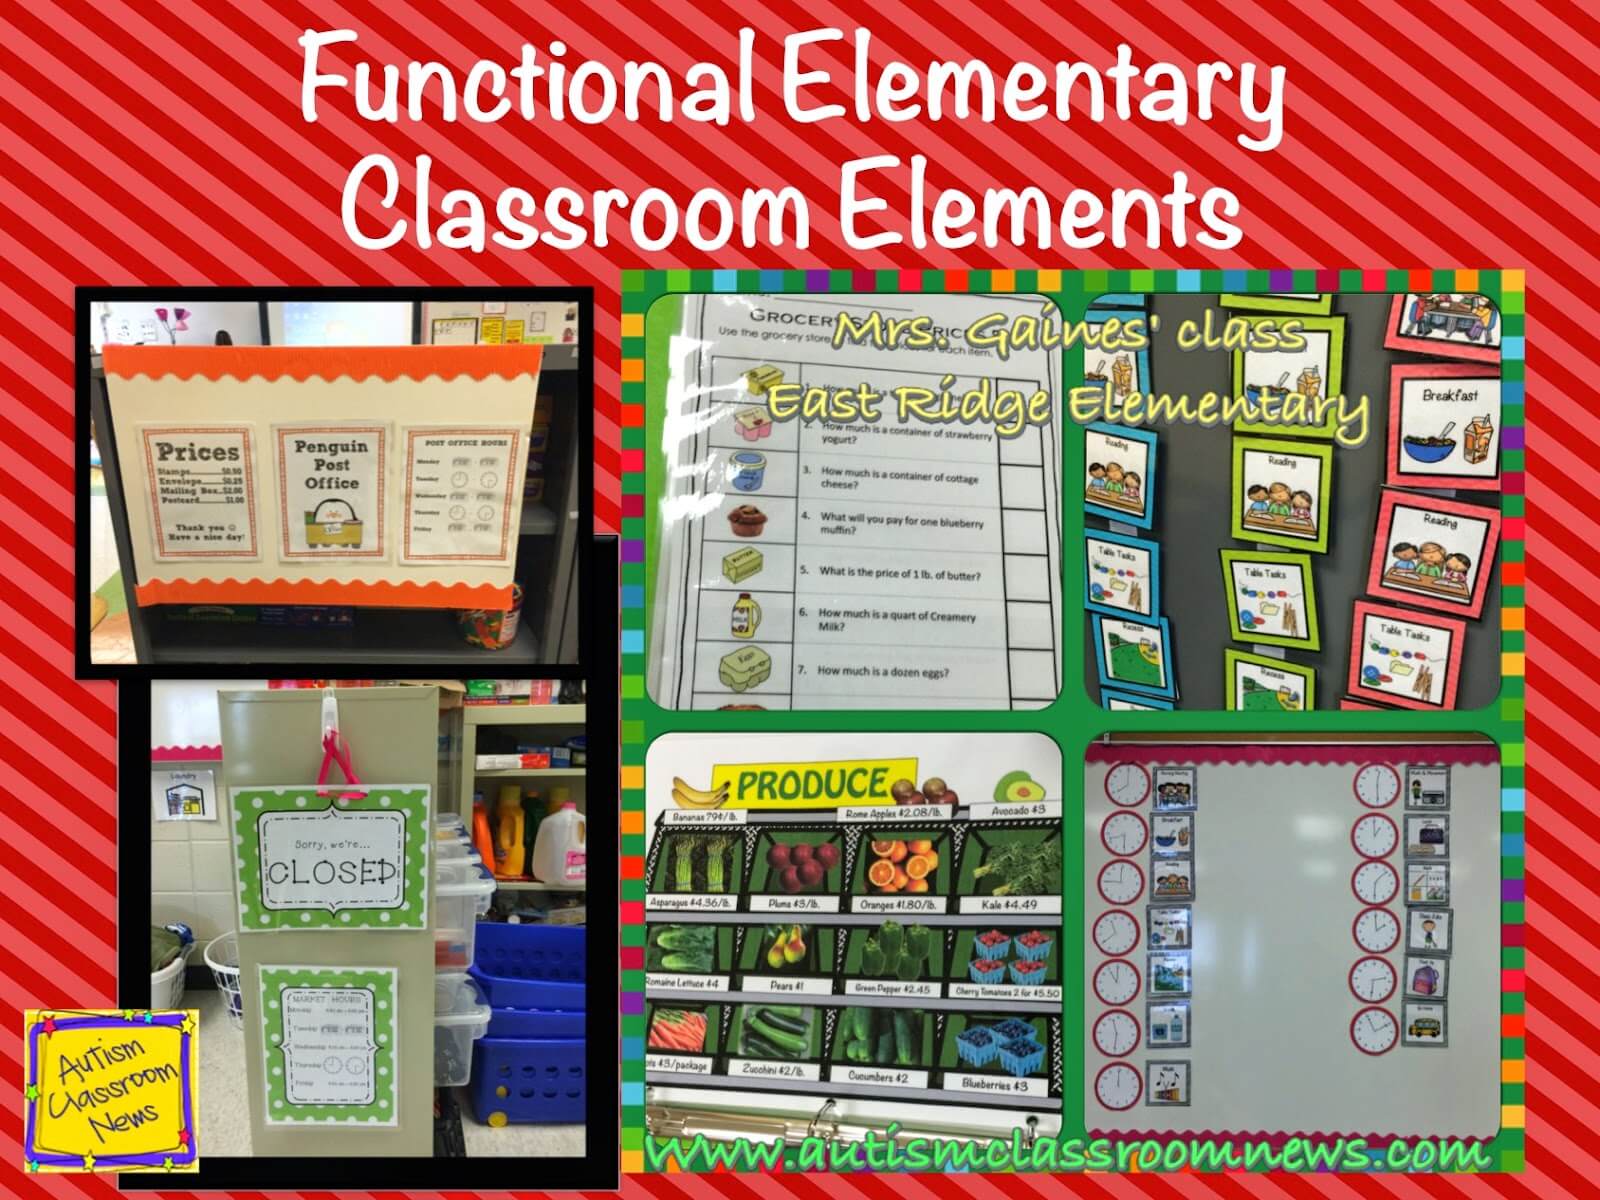 Elementary functions. Учебный класс в организации. Different Classroom Layouts.